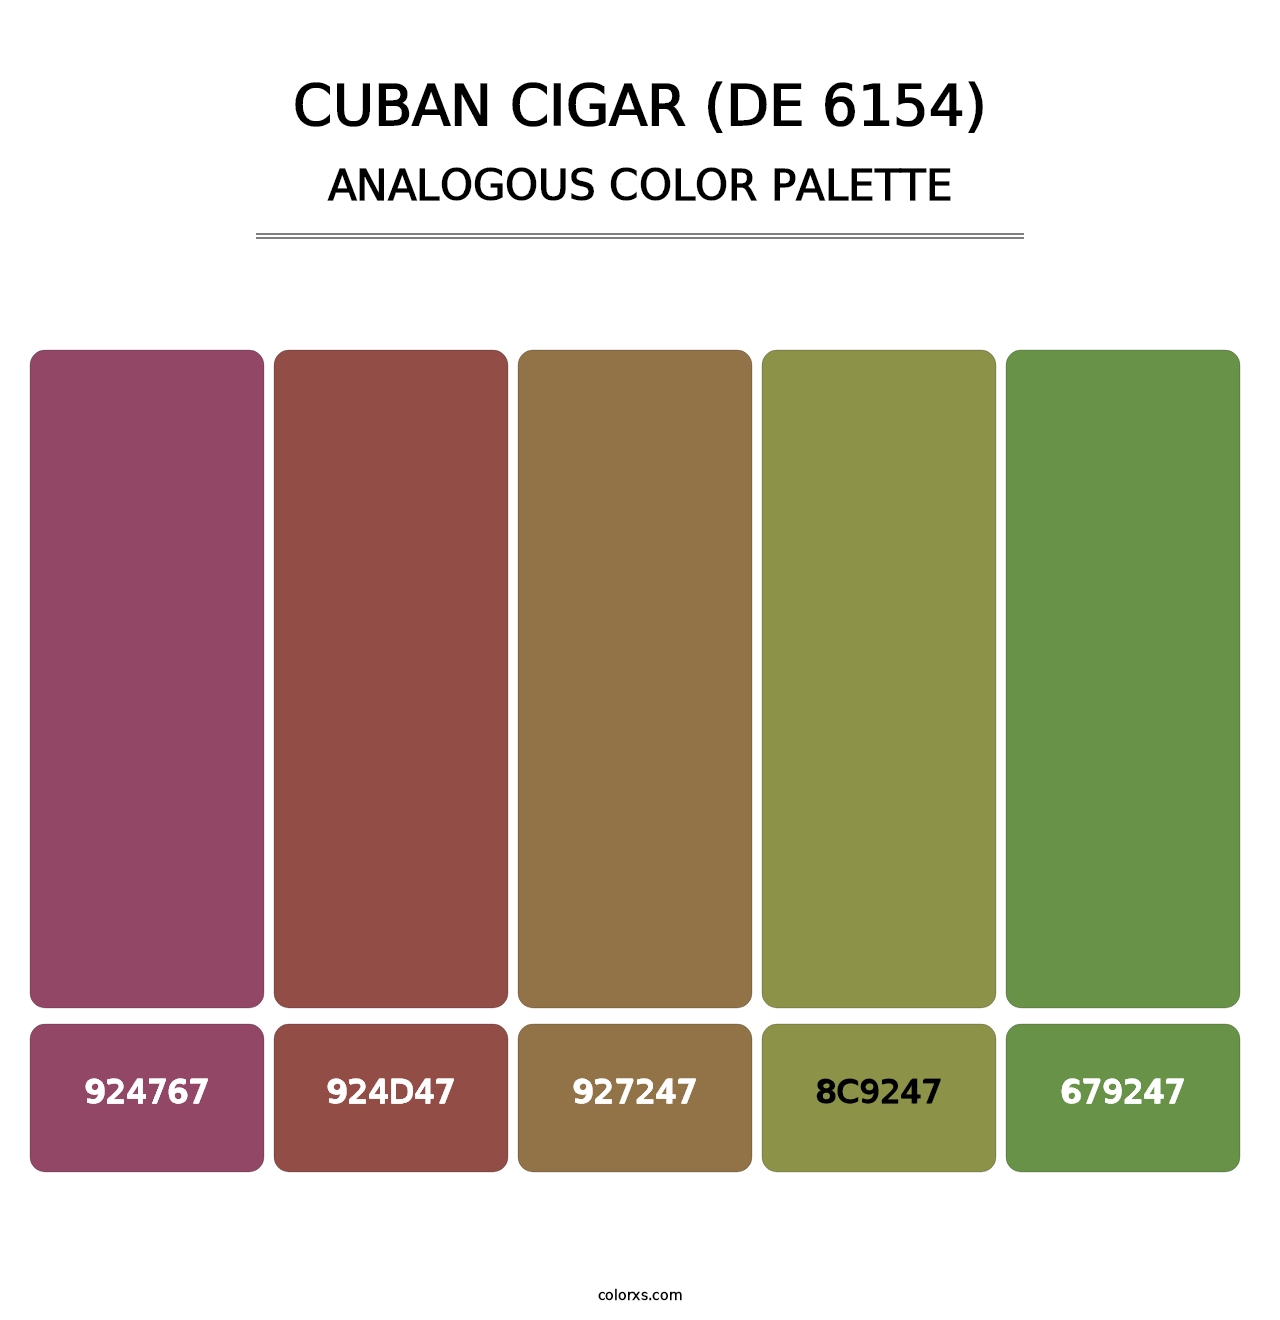 Cuban Cigar (DE 6154) - Analogous Color Palette